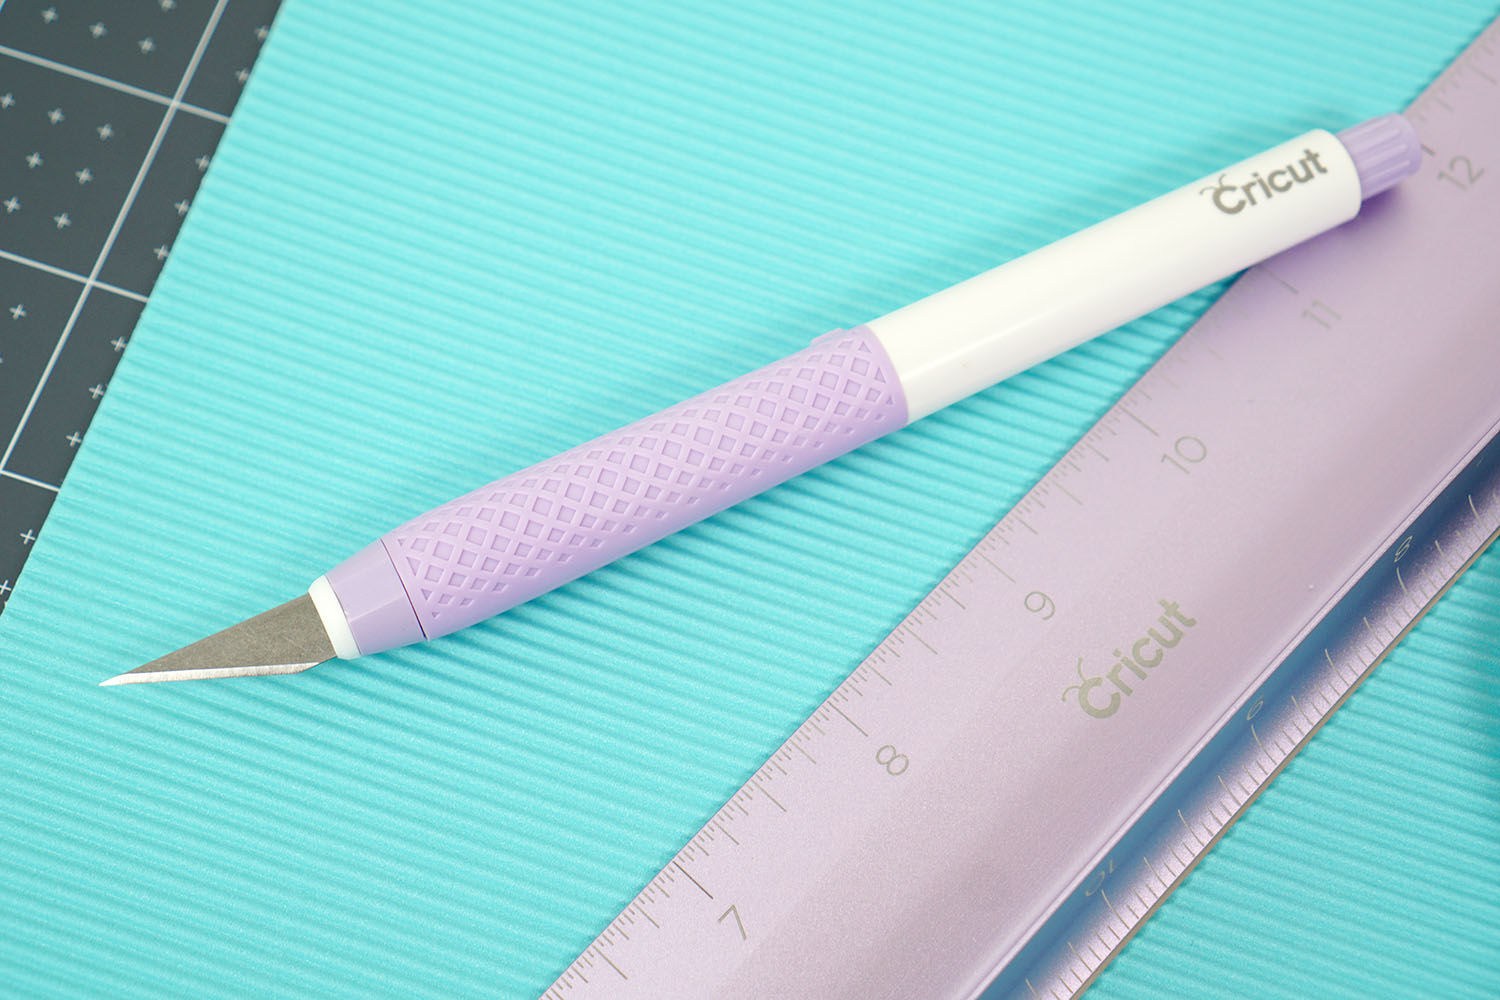 cricut cutting ruler and true control knife